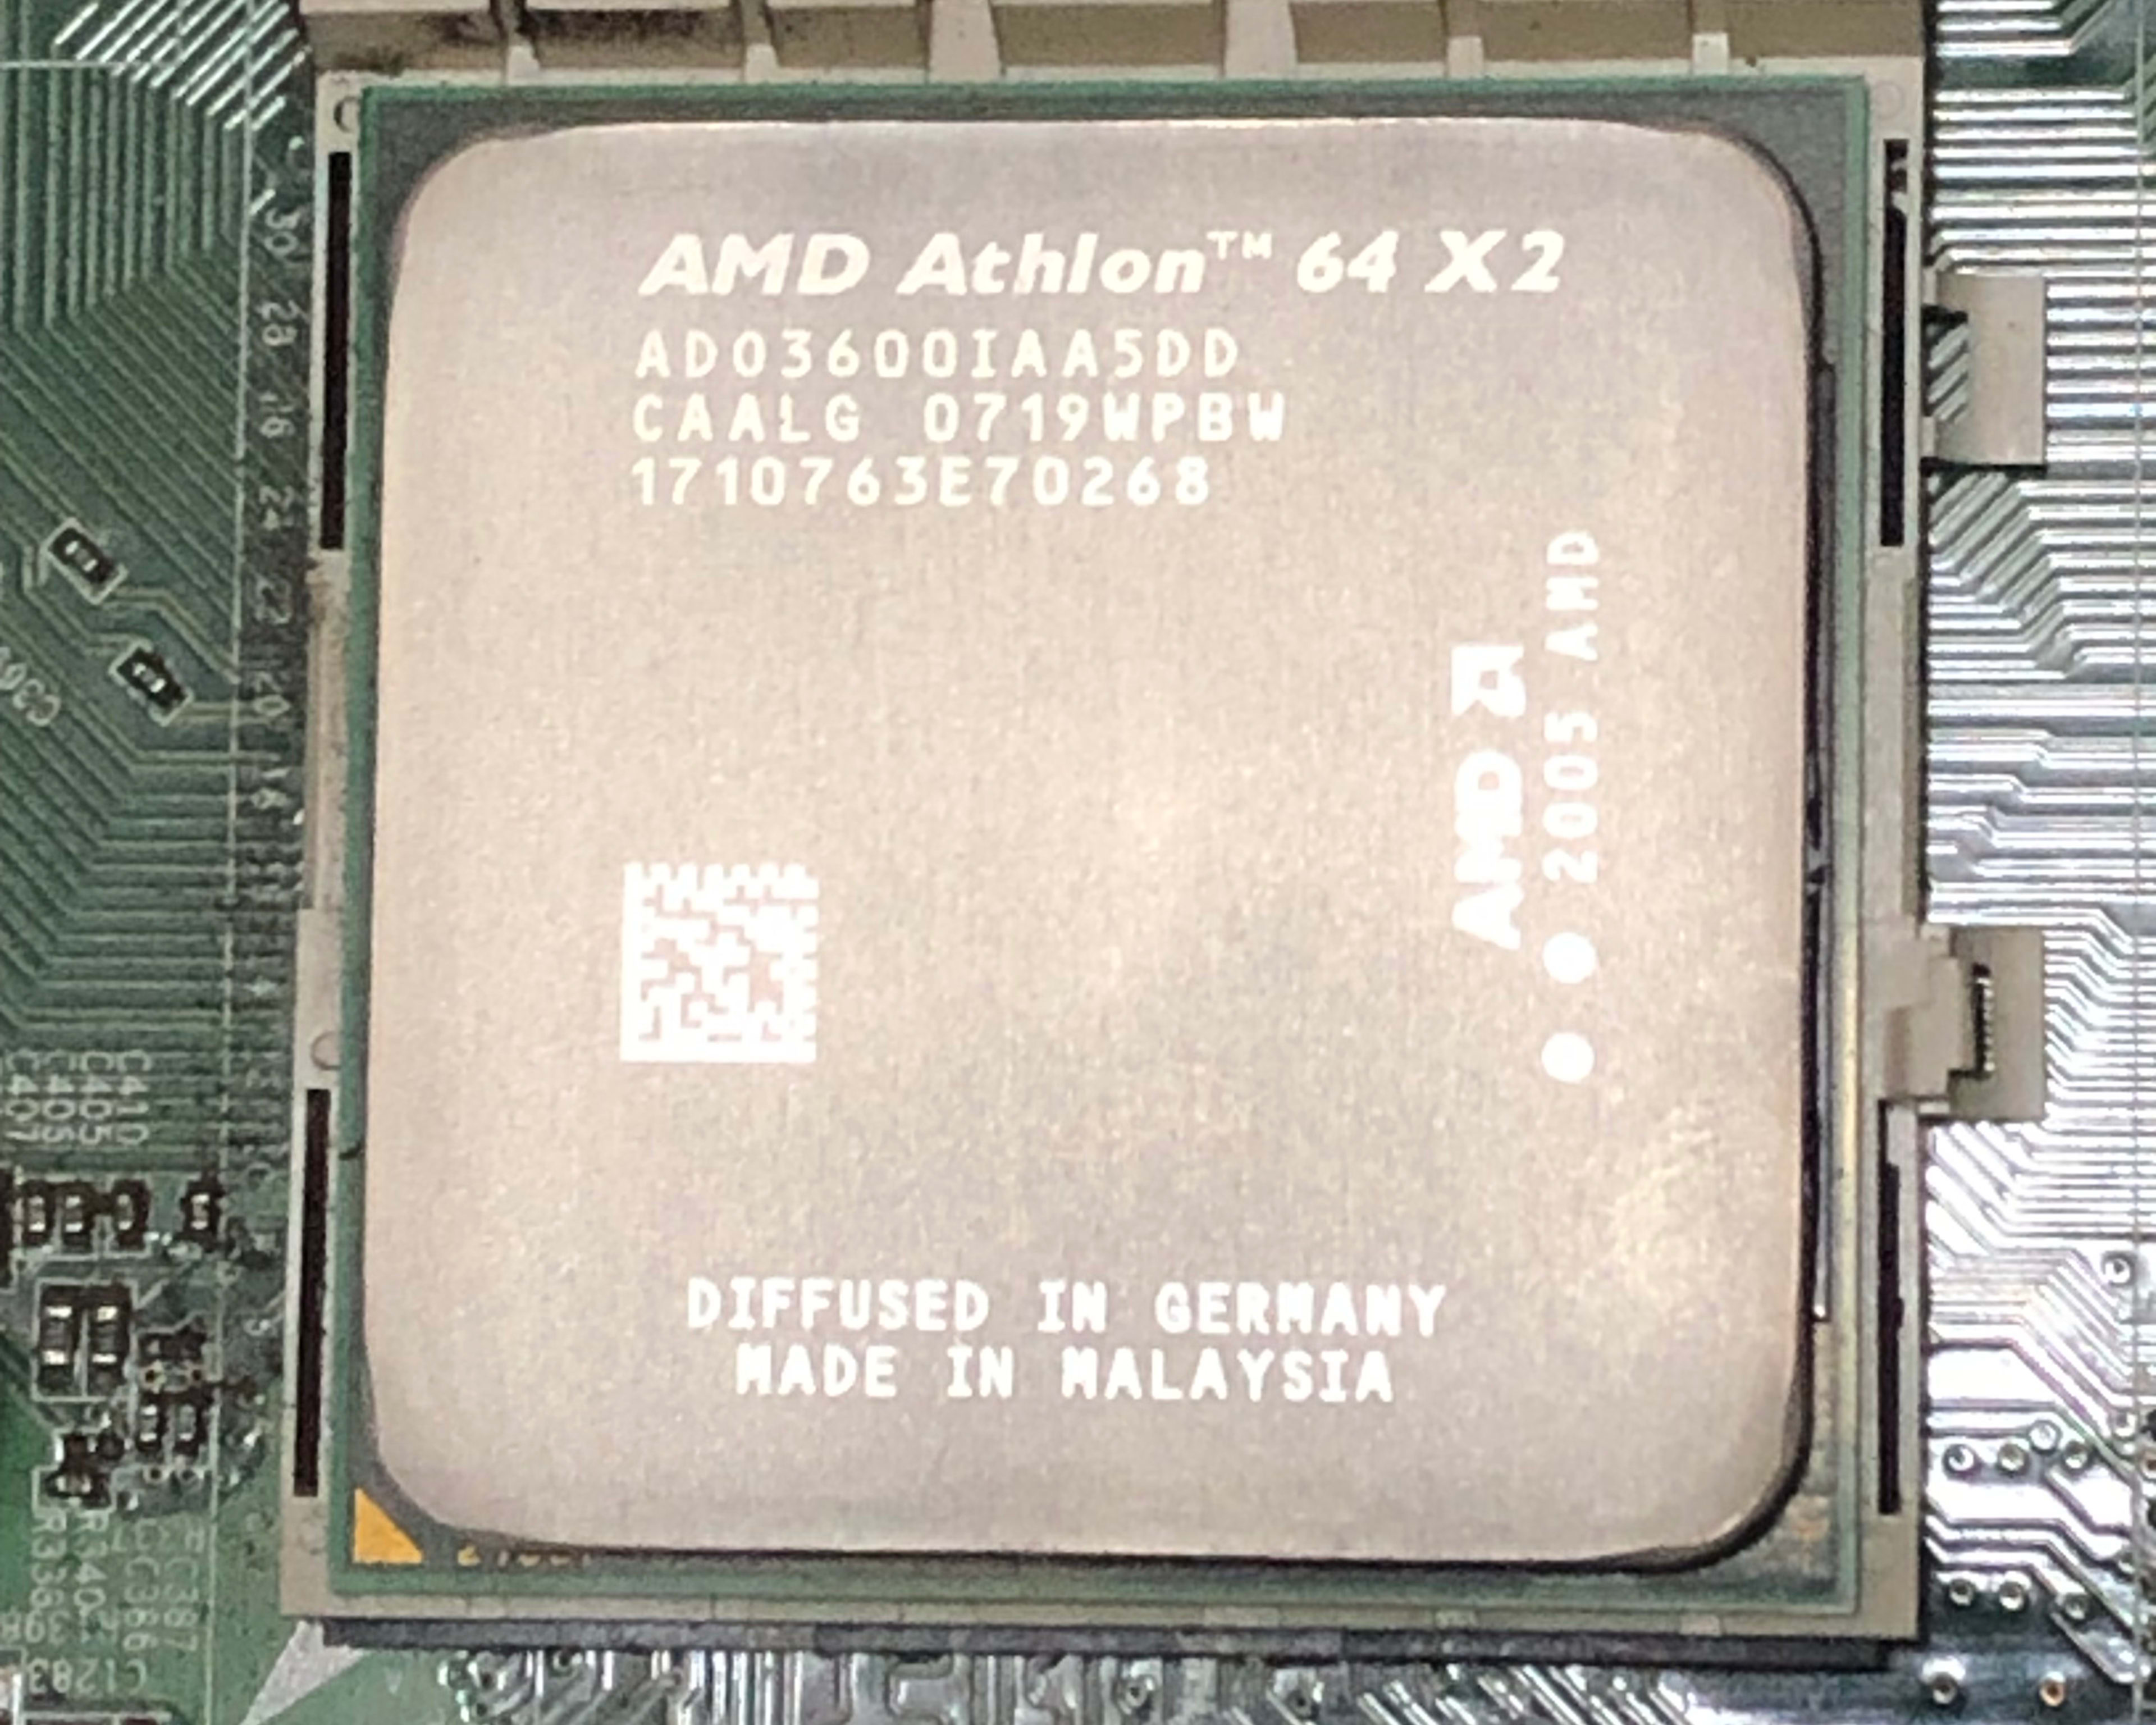 AMD Athlon 64 x2 3600+